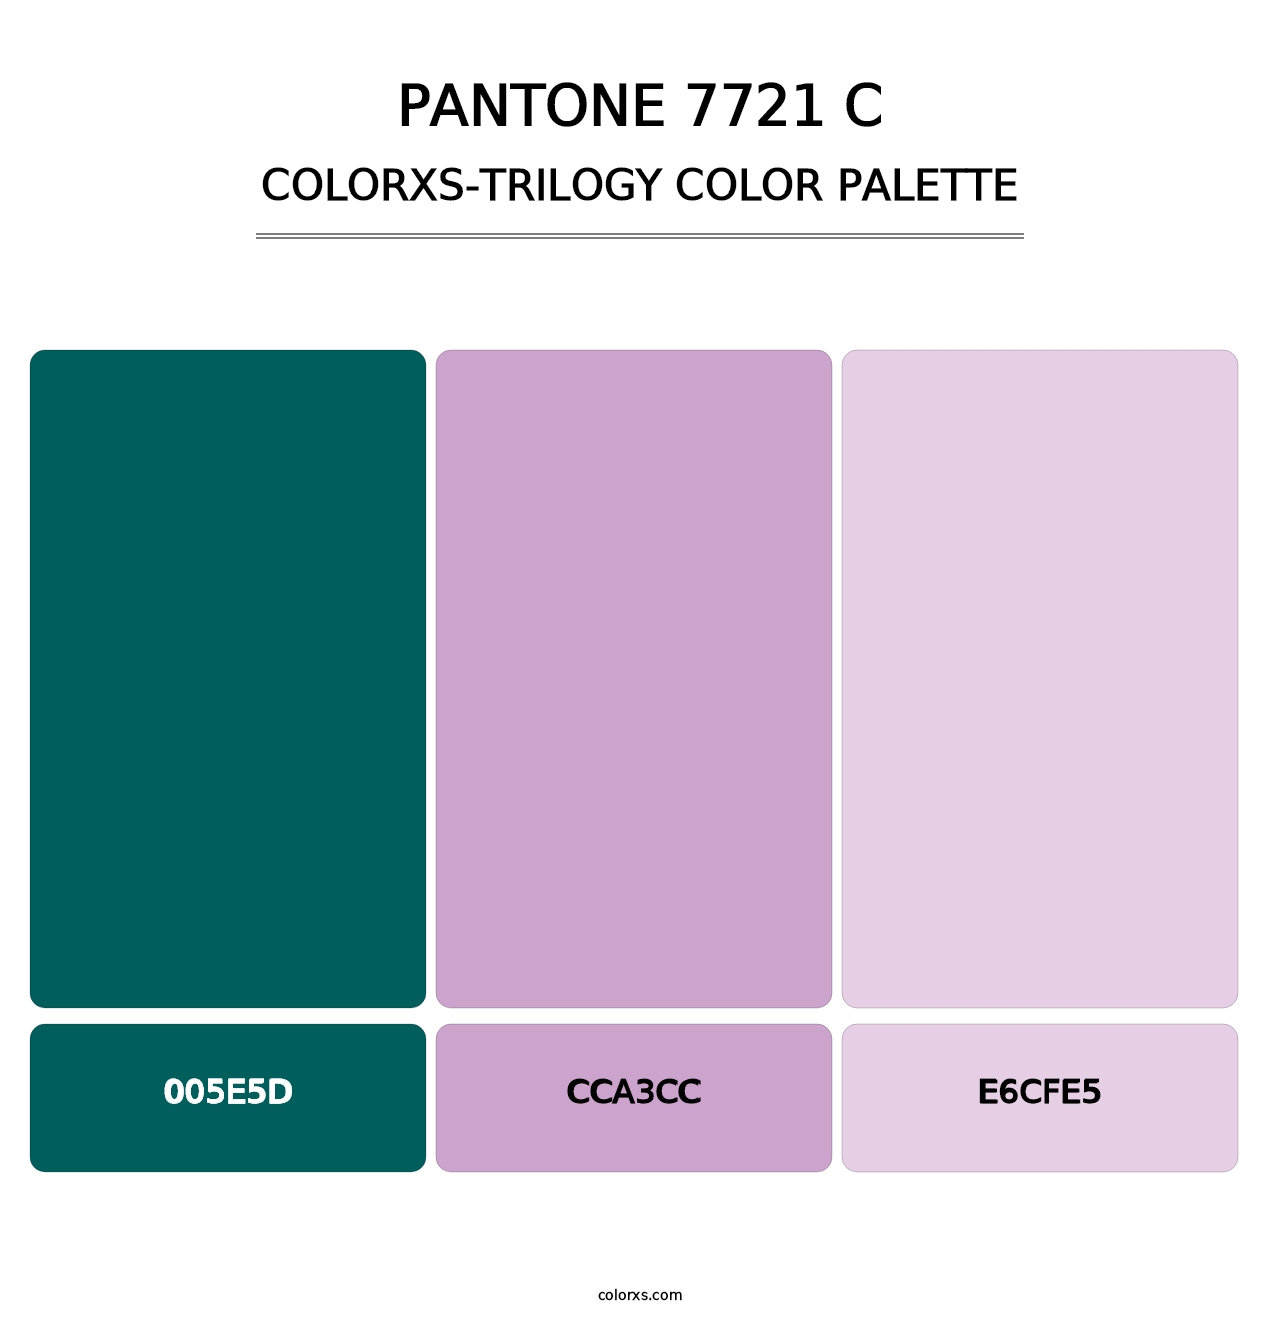 PANTONE 7721 C - Colorxs Trilogy Palette